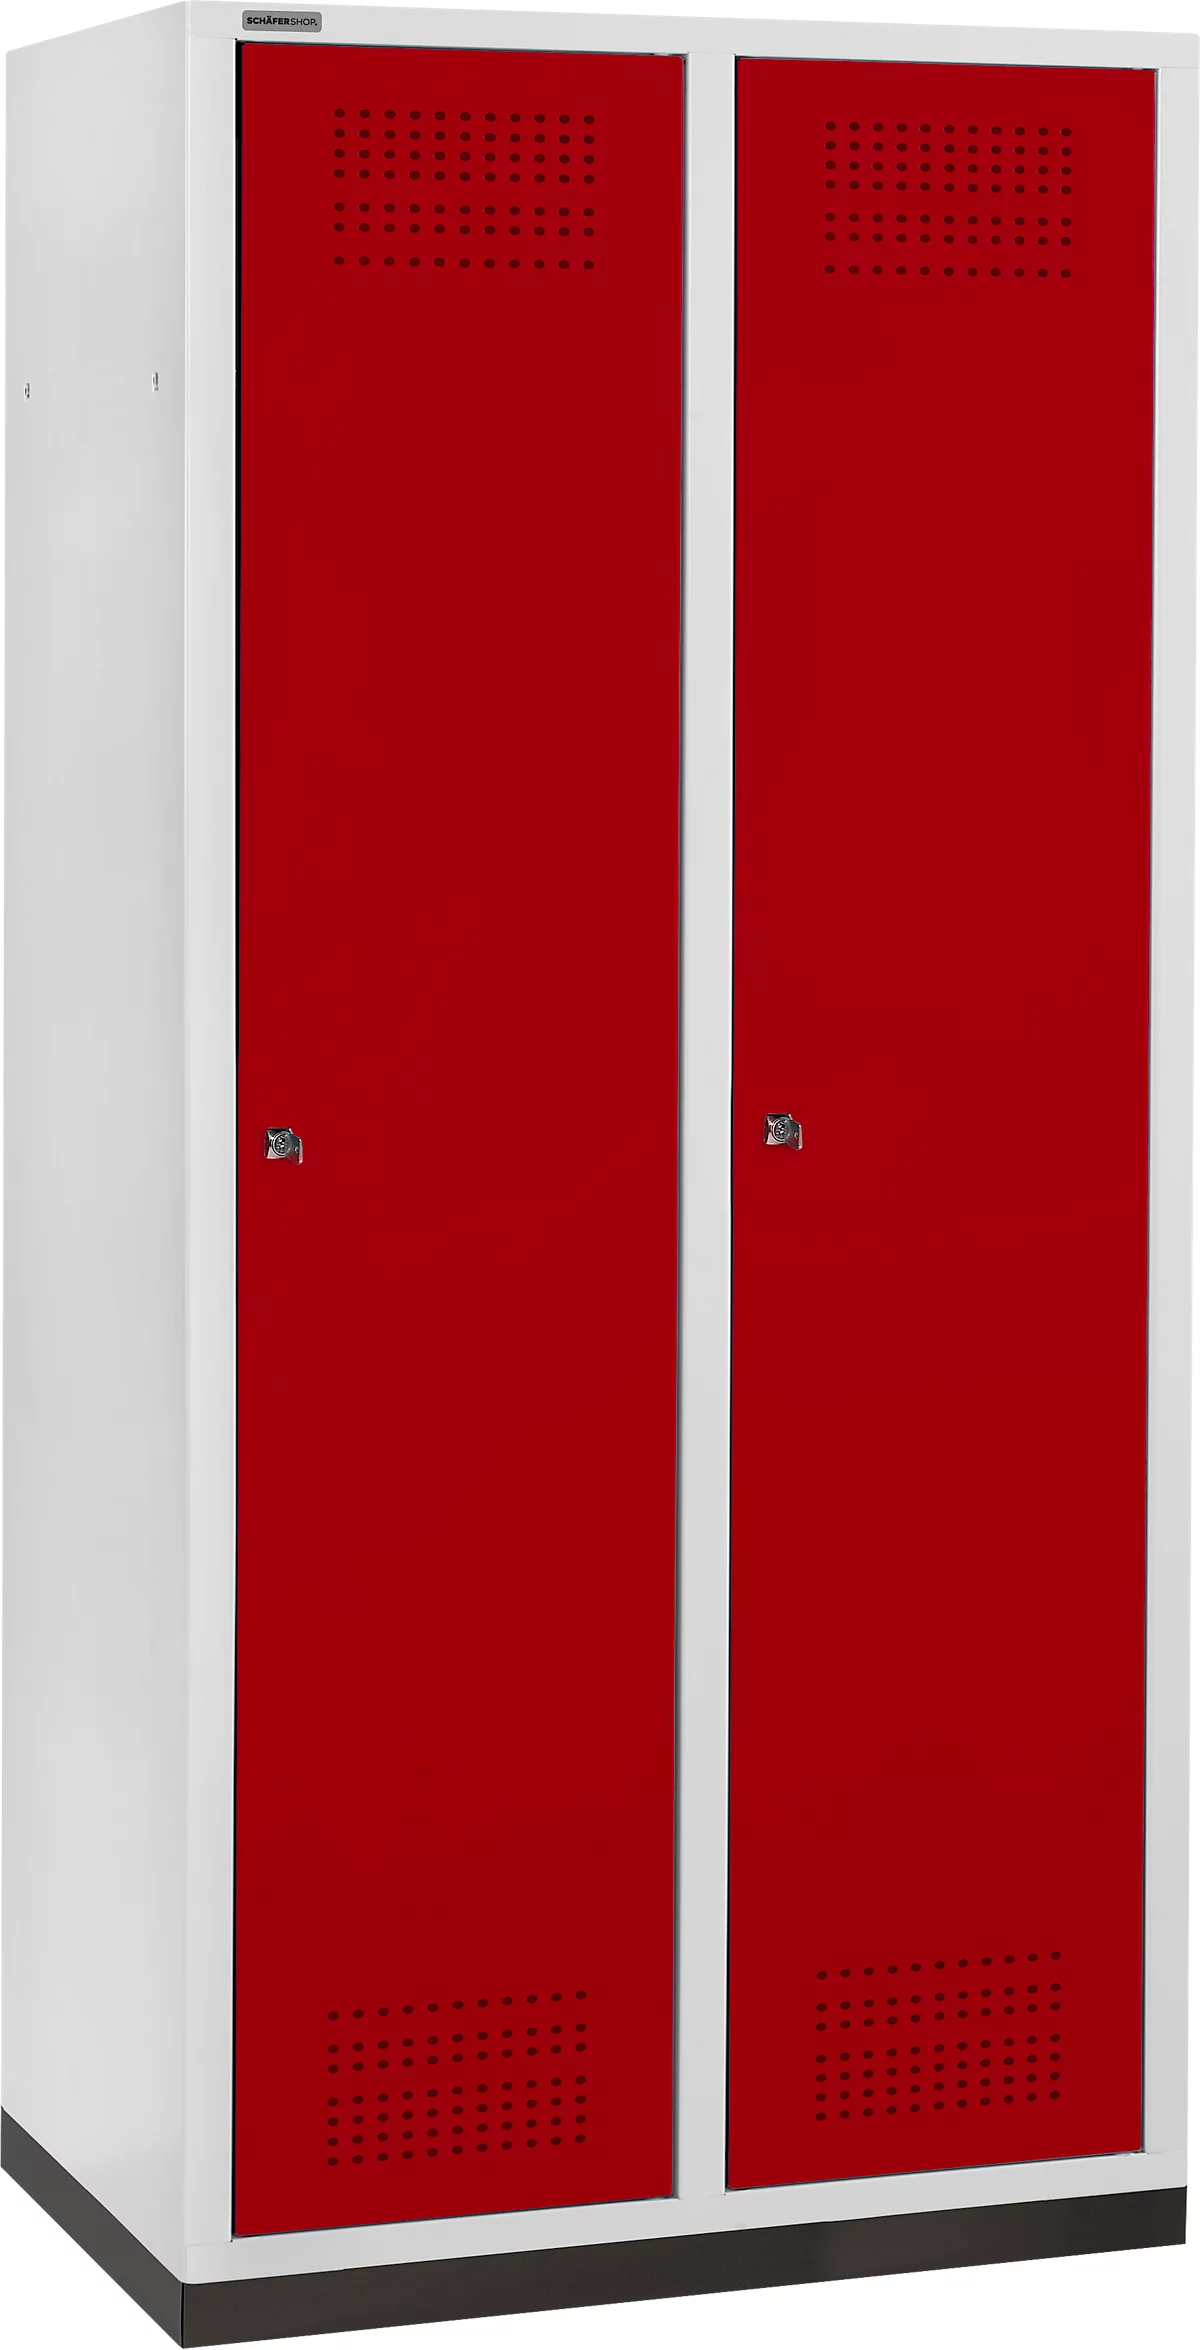 Schäfer Shop Genius Taquilla con zócalo, 2 compartimentos, anchura compartimento 400 mm, cerradura de cilindro, gris luminoso/rojo rubí